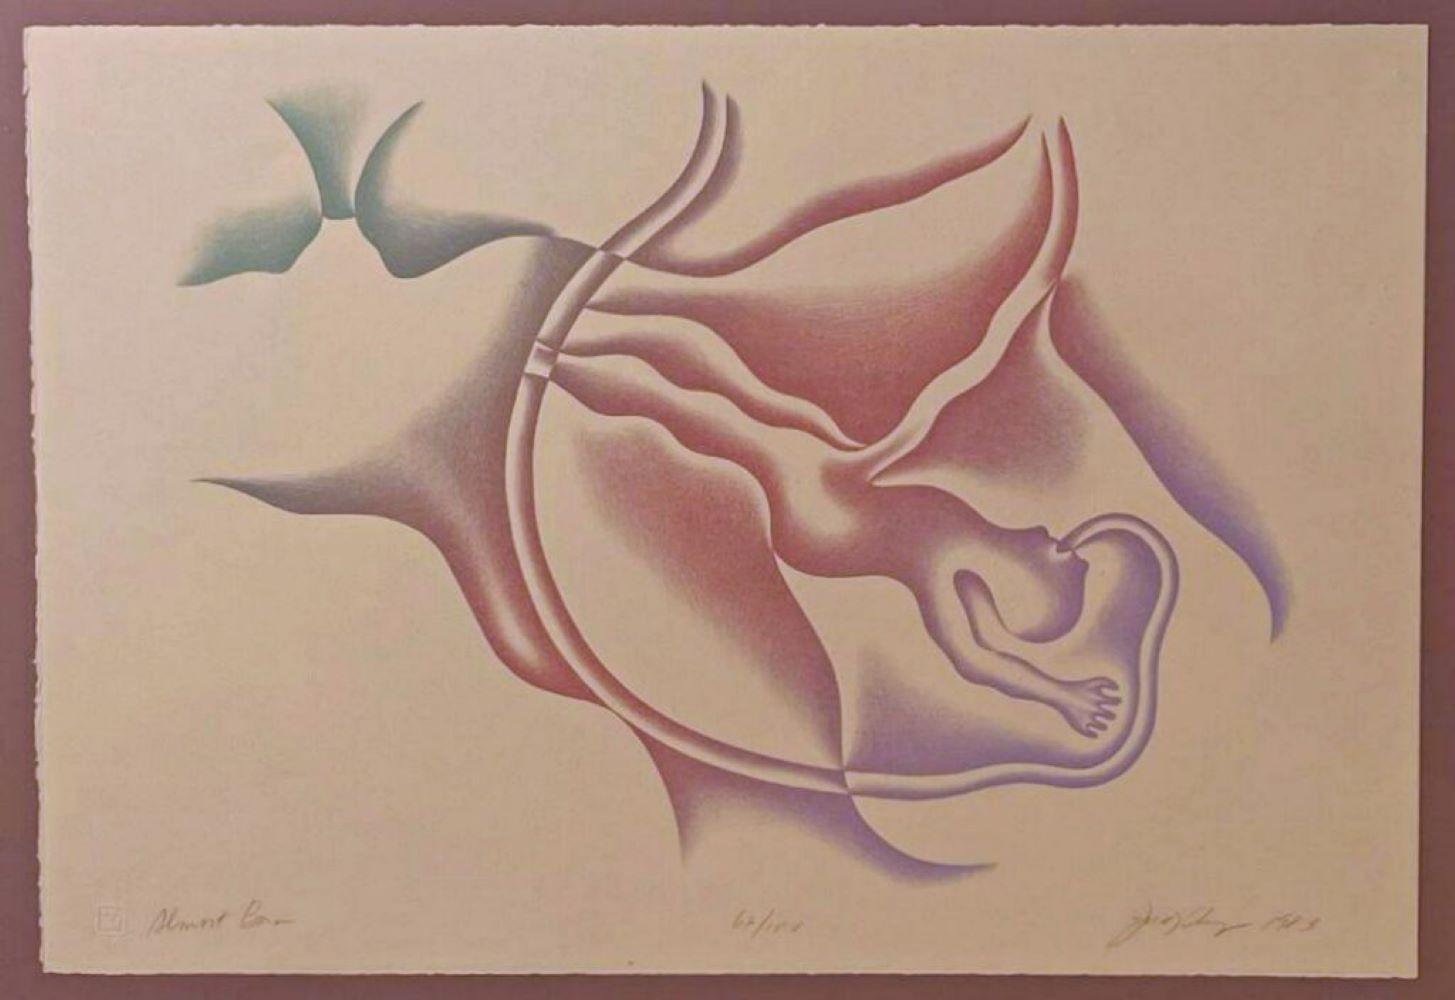 Abstract Print Judy Chicago - Almost Born (lithographie précoce signée/n d'une artiste féministe de renommée mondiale) 